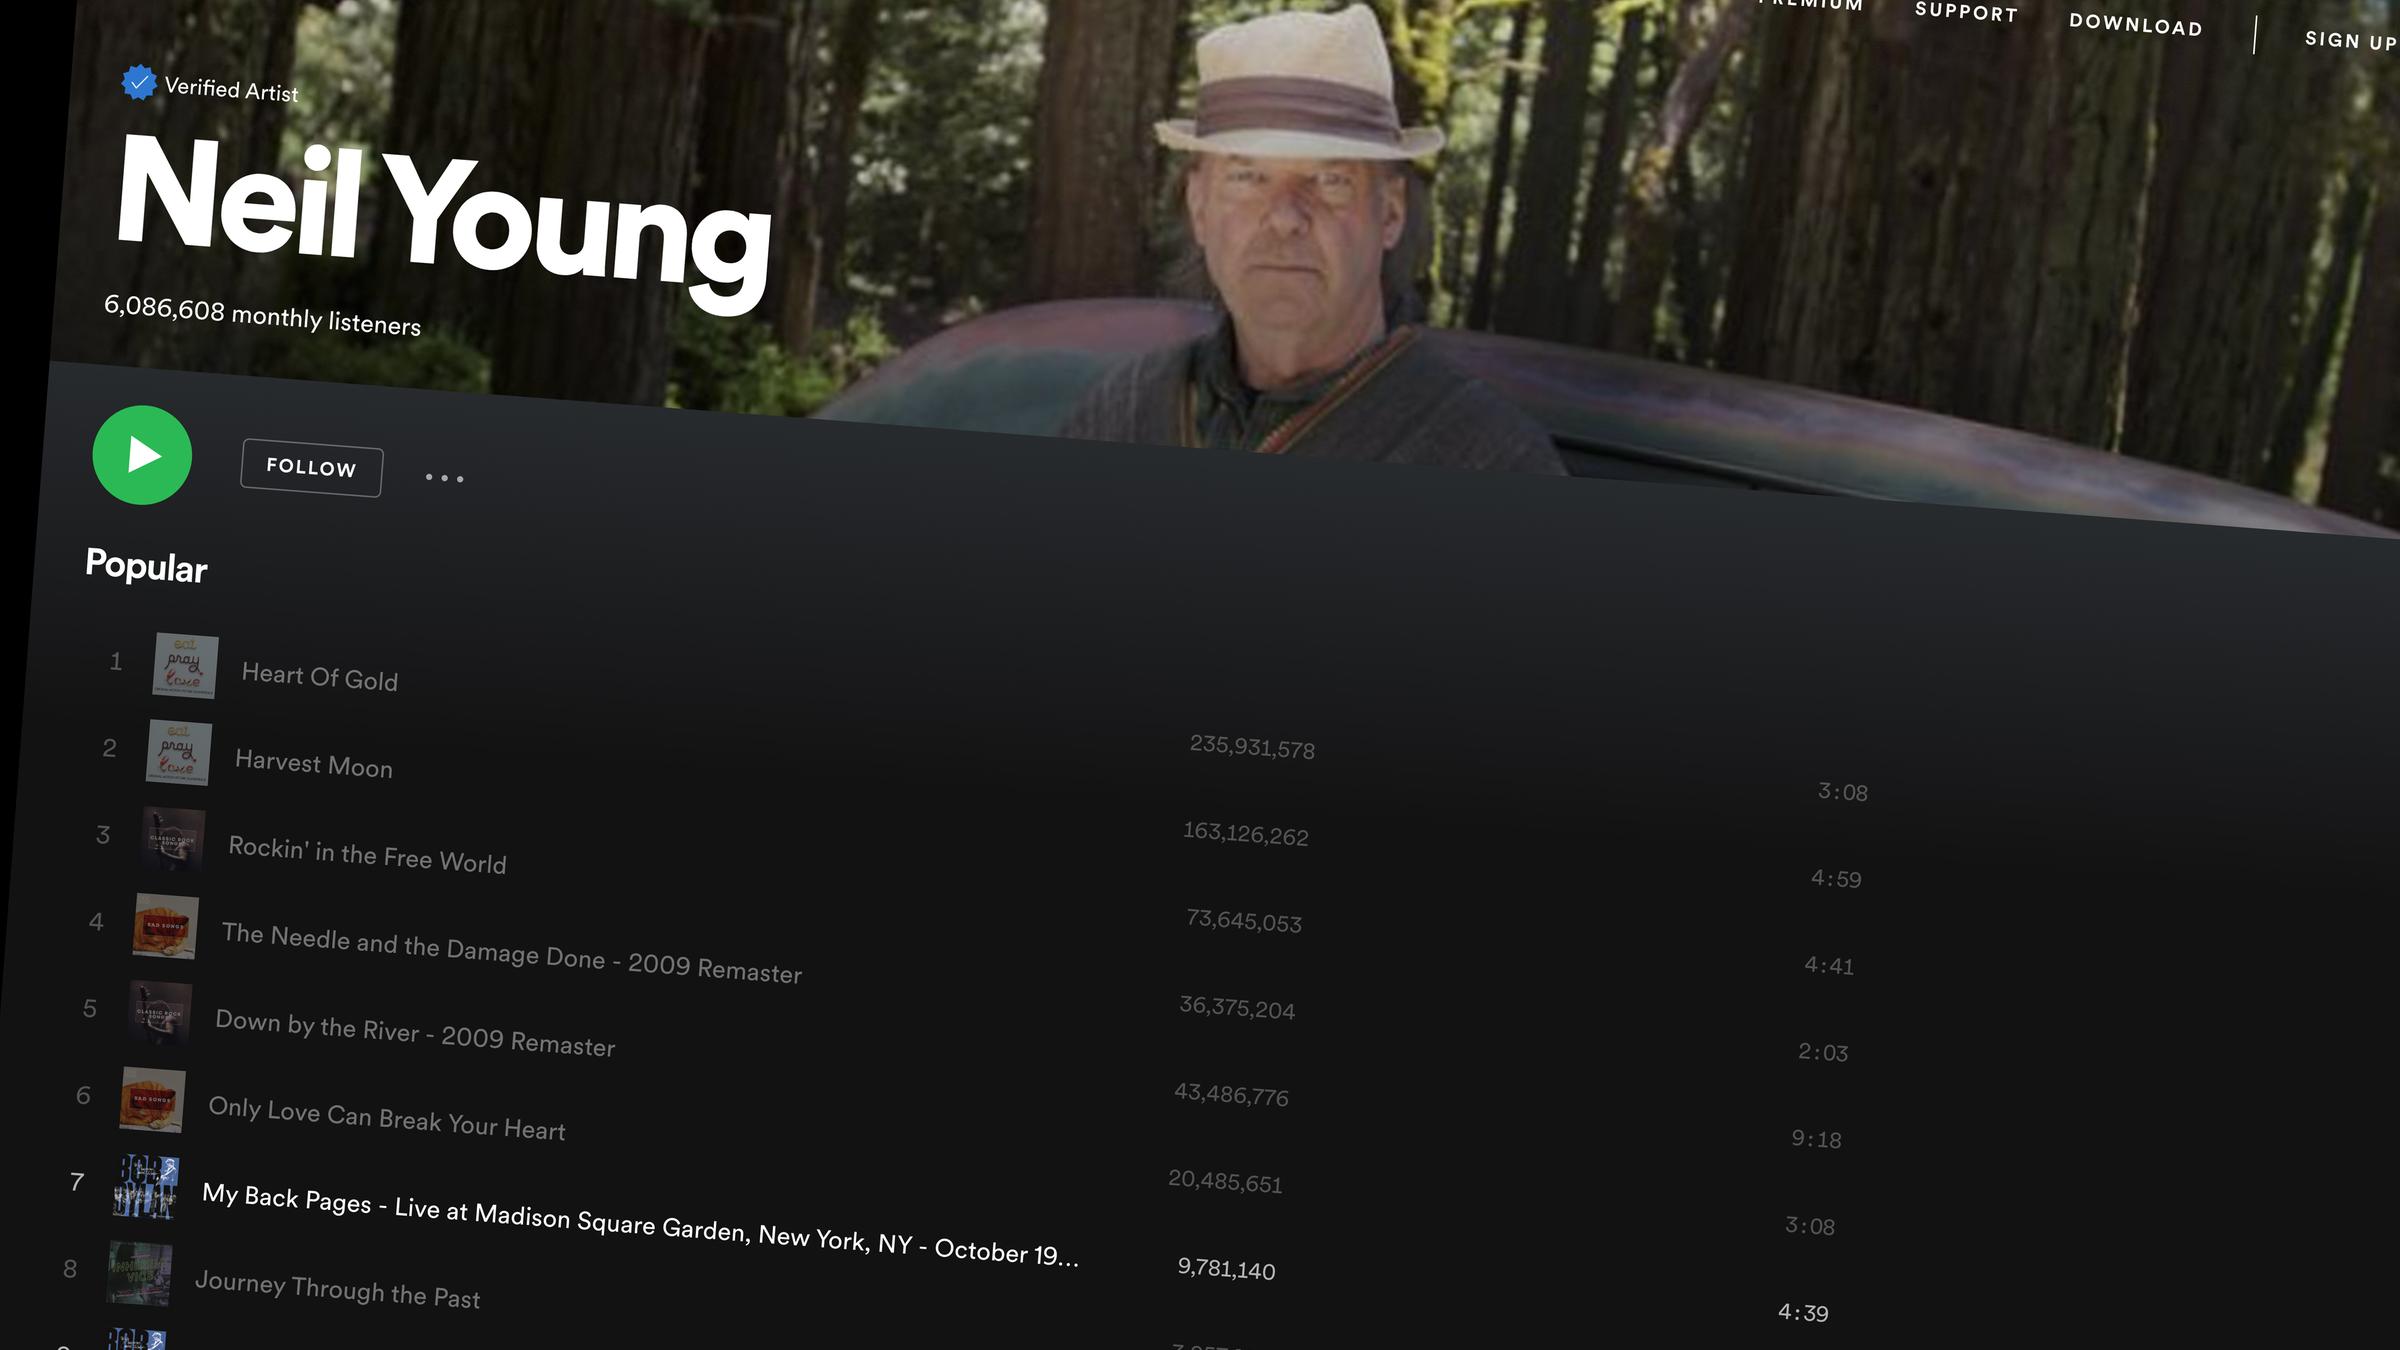 Neil Young auf Spotify. Seine Songs sind ausgegraut und nicht mehr absp...</p>

                        <a href=